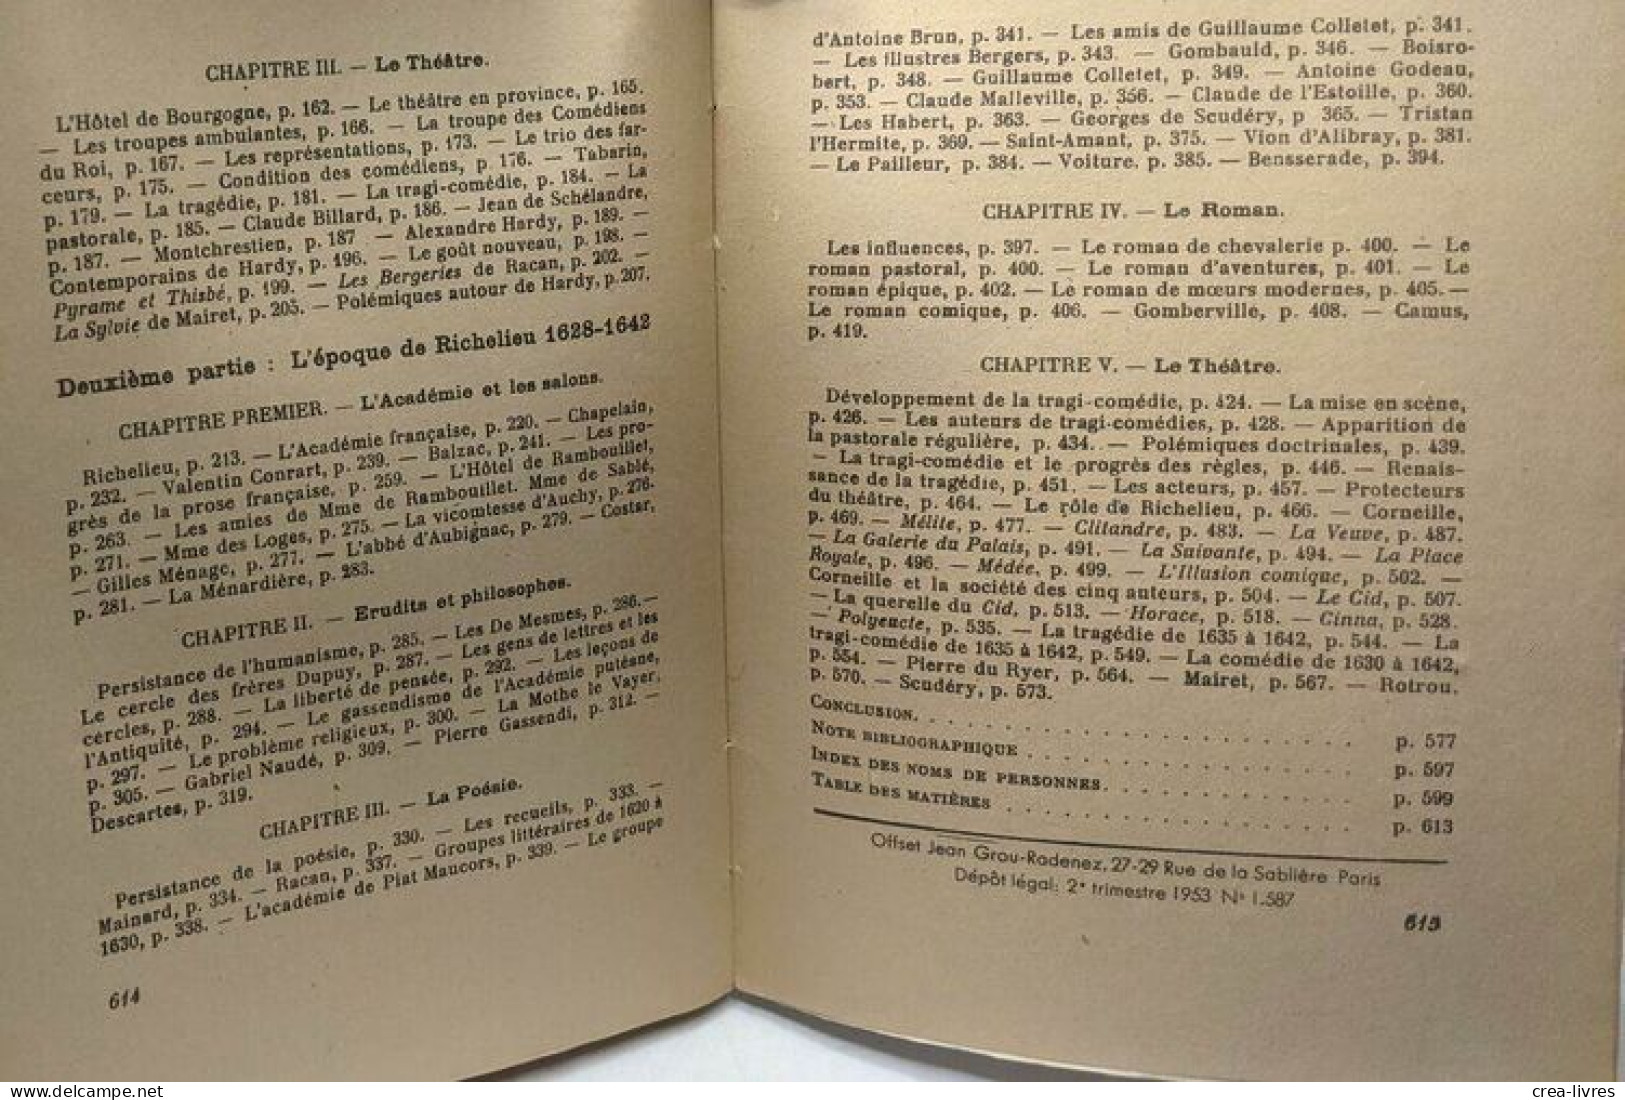 Histoire De La Littérature Française Au XVIIe Siècle - Tome I - L'époque D'Henri IV Et De Louis XIII (1953) + Tome II - - Geschiedenis